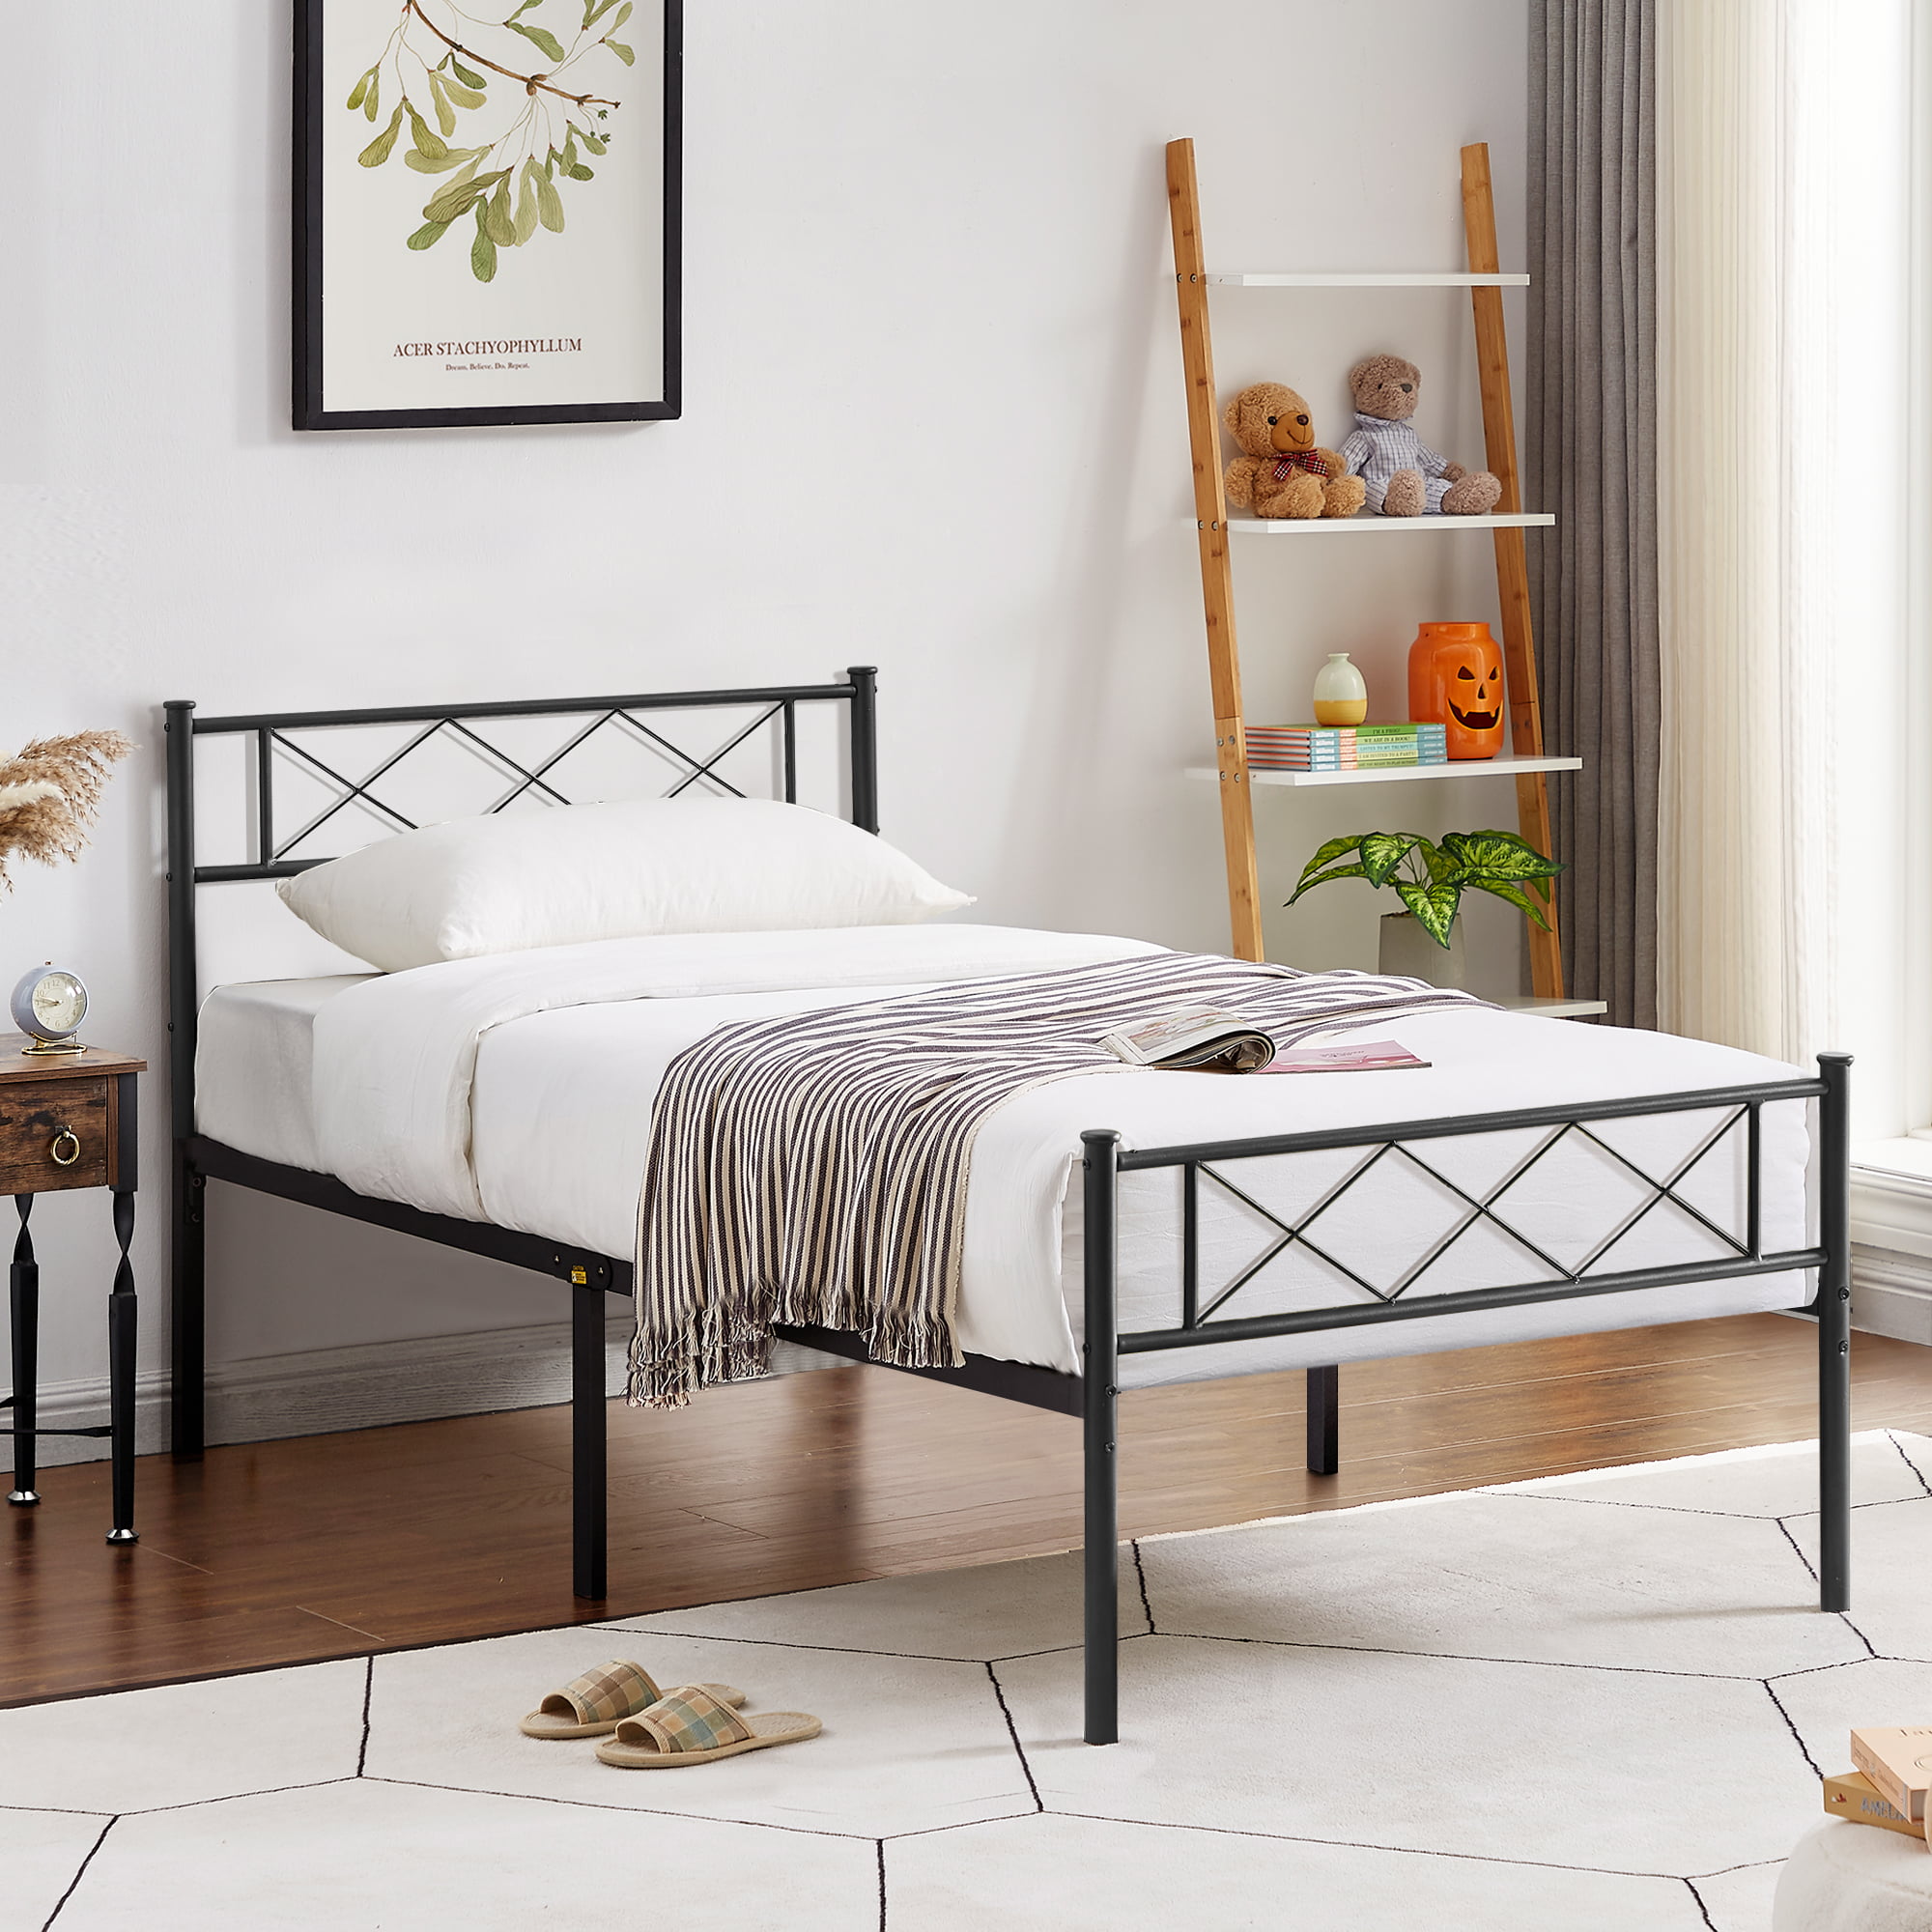 Twin/Full Size Metal Platform Bed Frame & Footboard Kid's Bedroom Furniture Side 